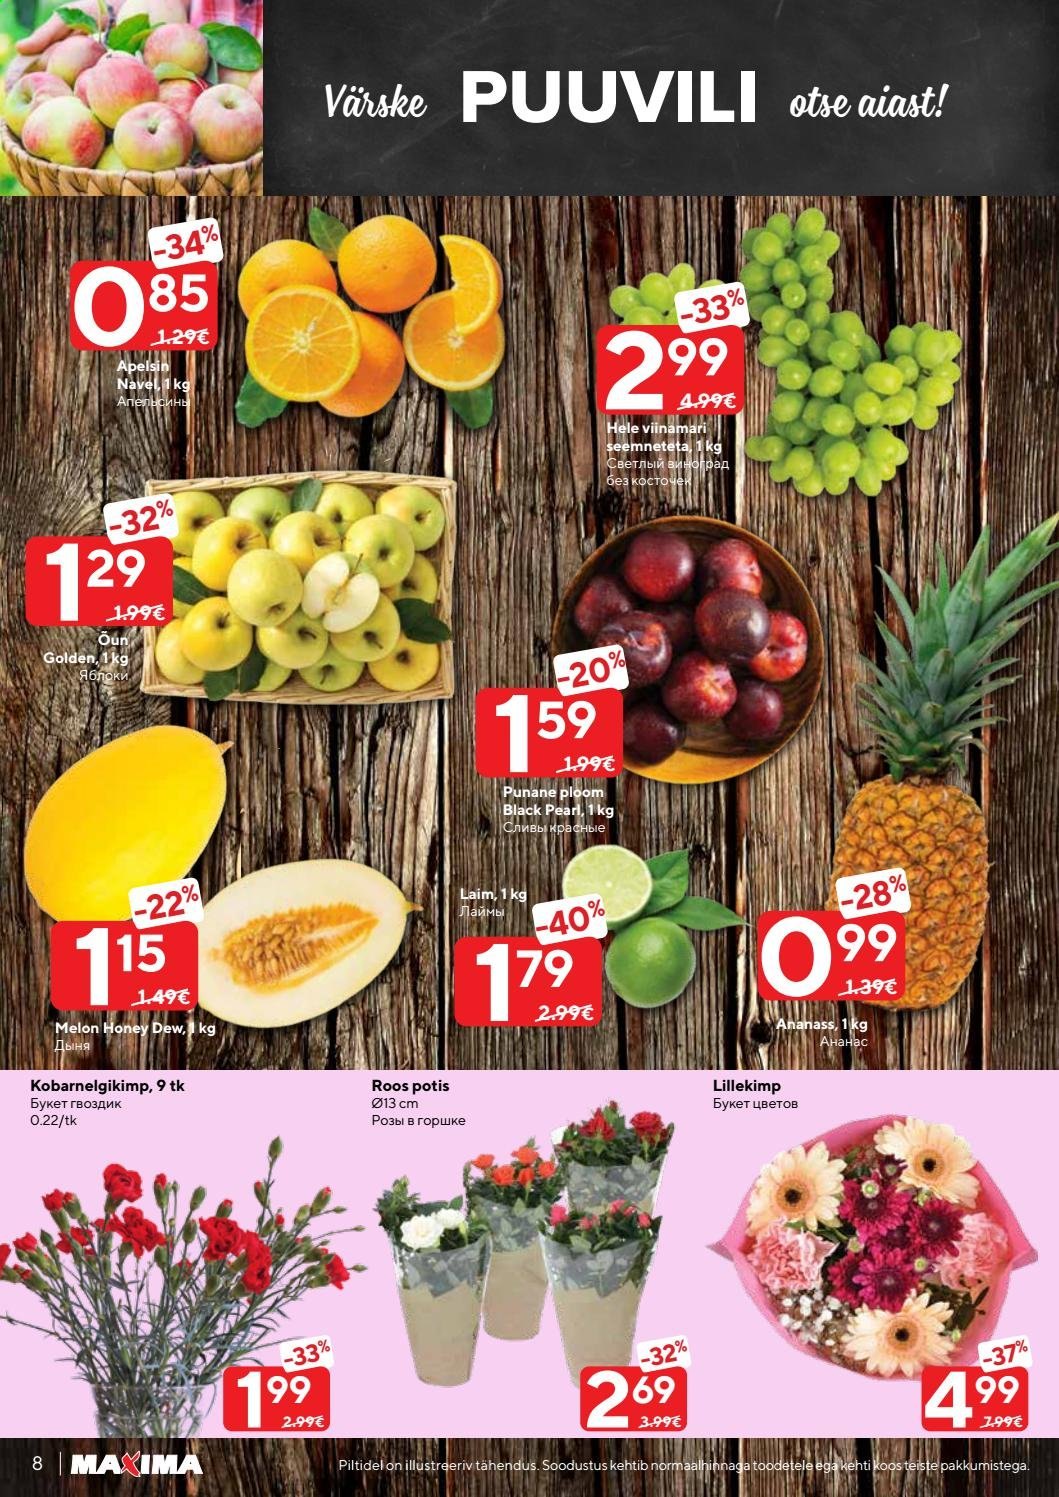 thumbnail - Kaupluse Maxima kliendileht - 02.03.2021 - 08.03.2021 - soodustooted - ananass, apelsin, hele viinamari, ploom. Lehekülg 8.